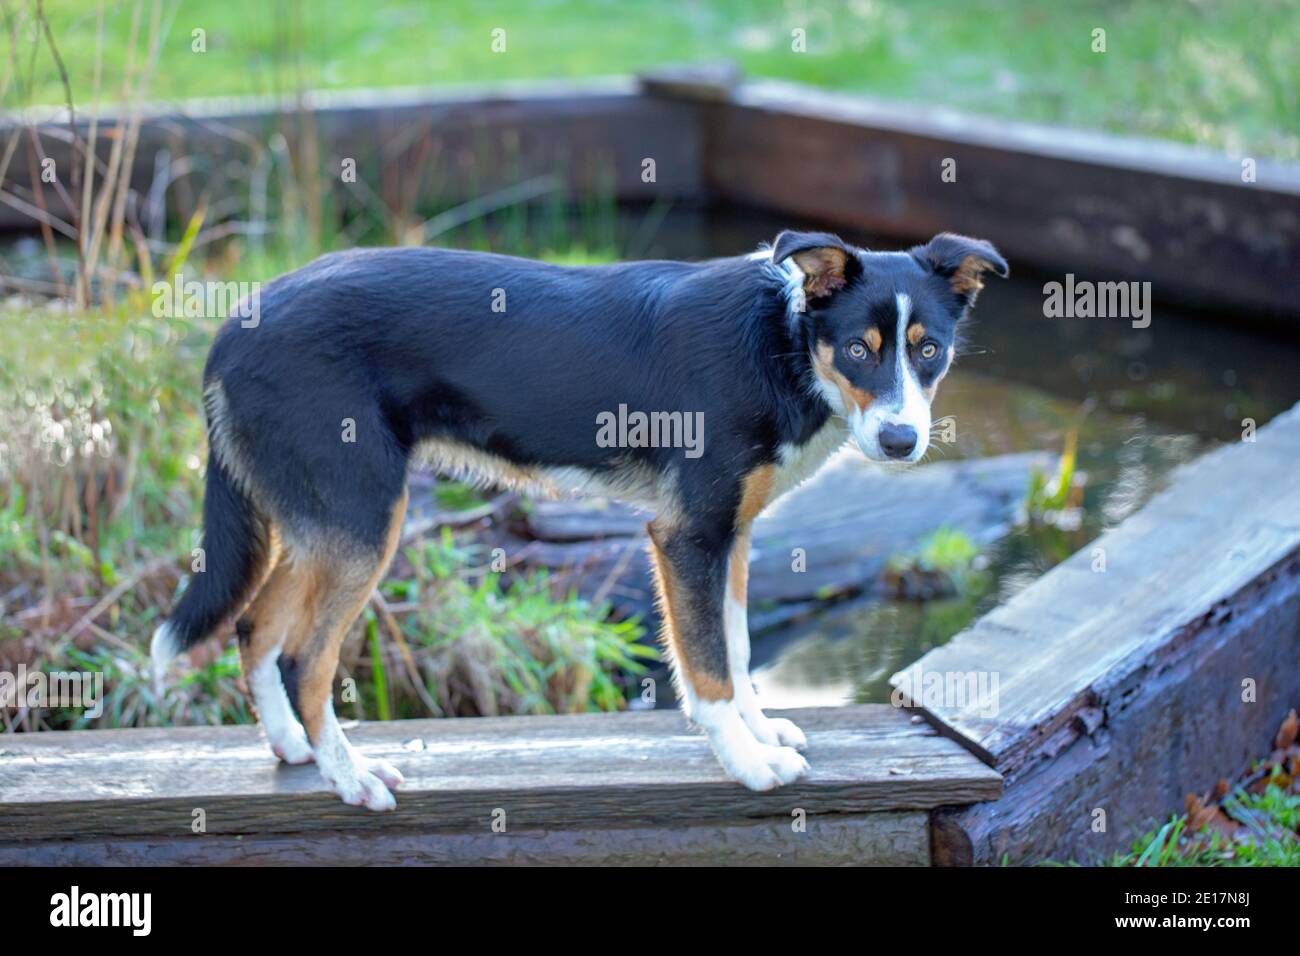 Dreifarbiger Border Collie Dog (Canis lupus familiaris). Haustiere, Haustier, Begleiter, Arbeit, Schäferhund Rasse. Auf einer Planke stehend. Stockfoto